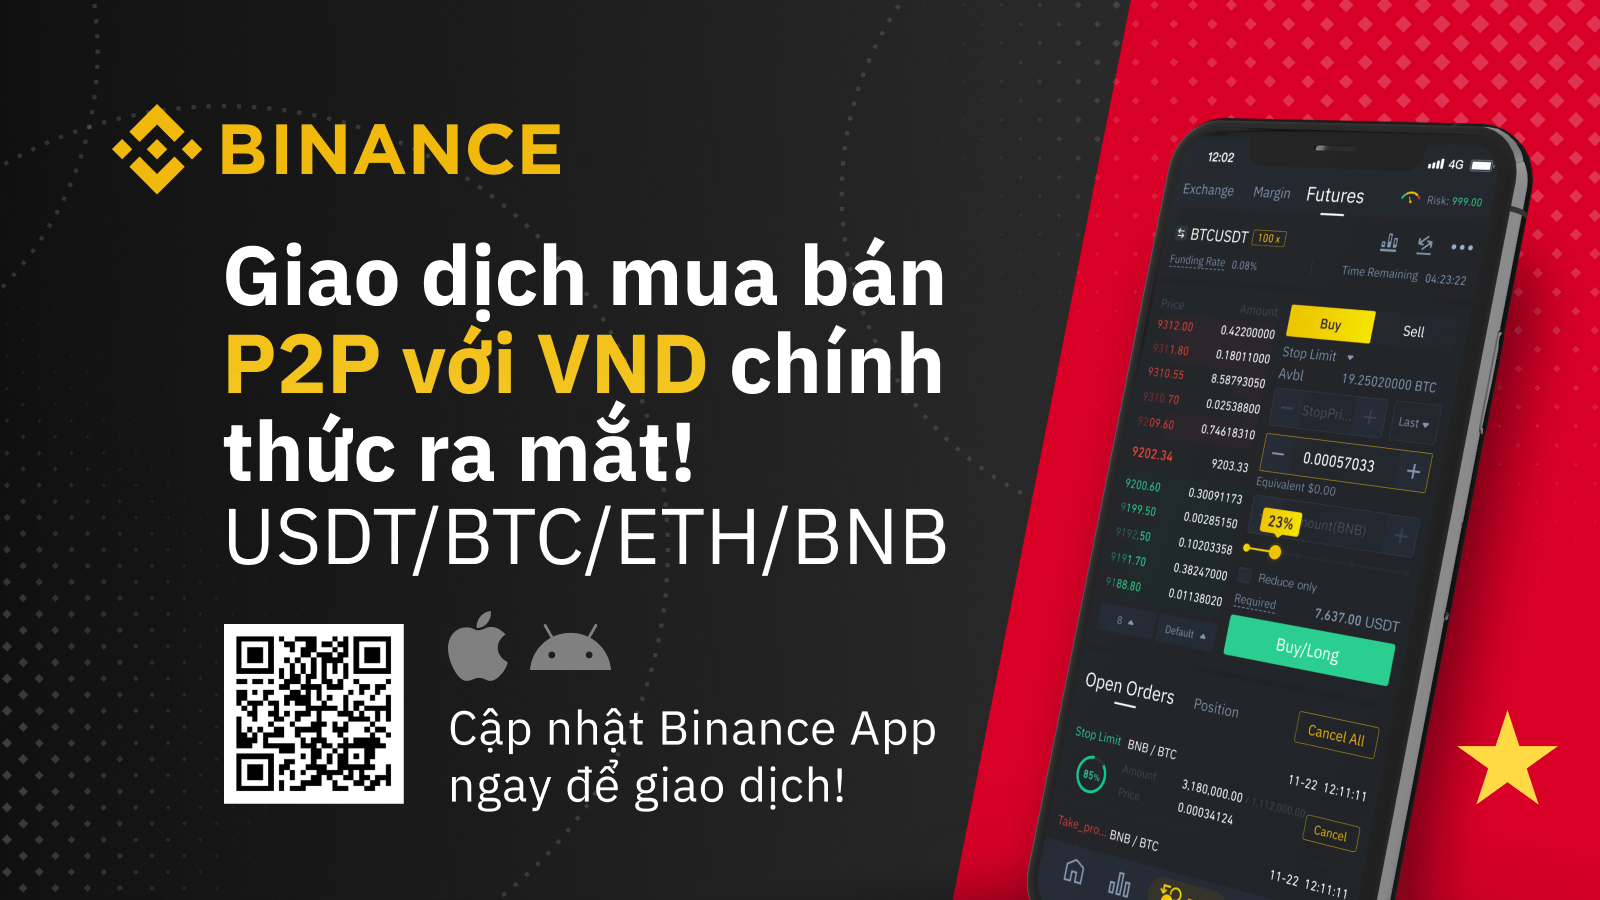 Binance chính thức hỗ trợ giao dịch P2P Crypto bằng Việt Nam Đồng